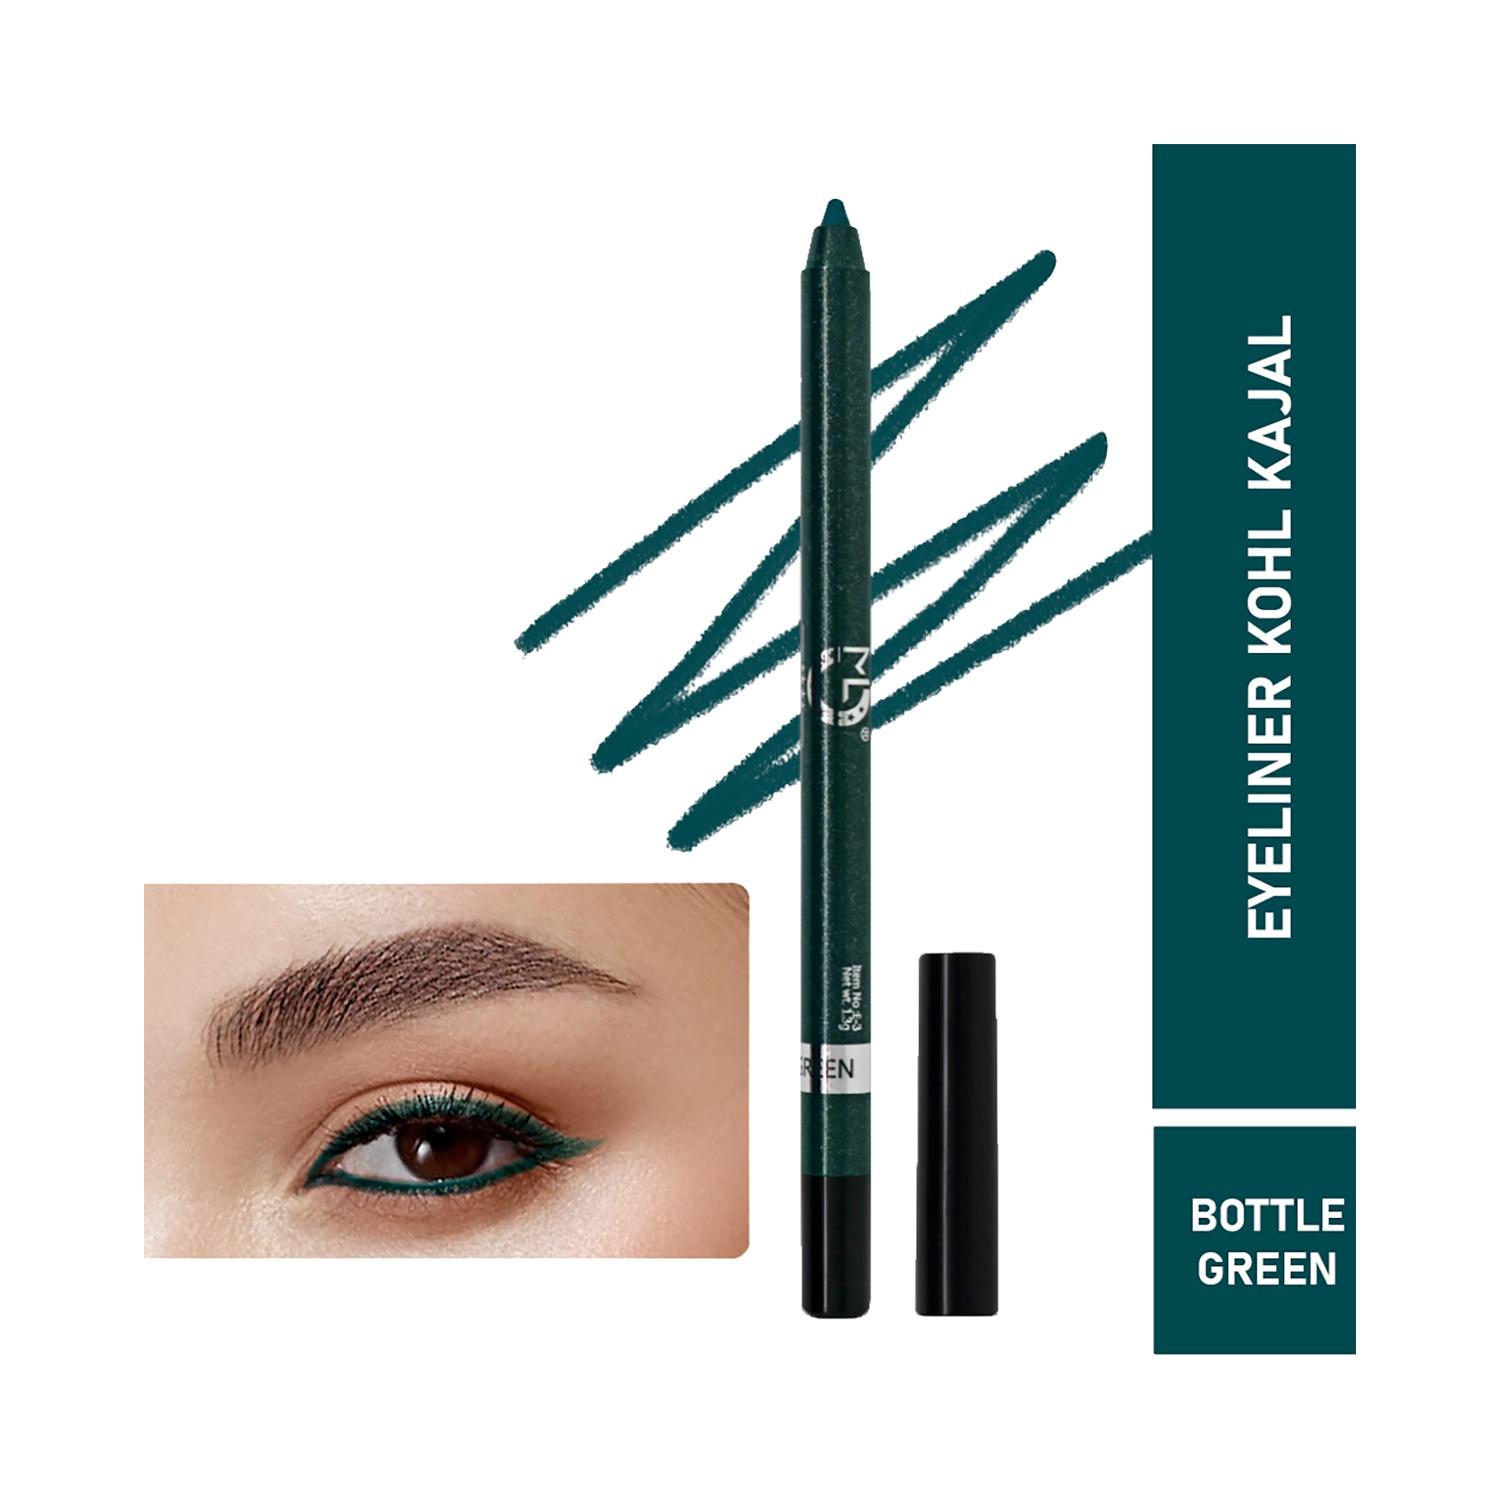 matt-look-single-stroke-super-glide-eyeliner-kohl-kajal---bottle-green-(1.3g)